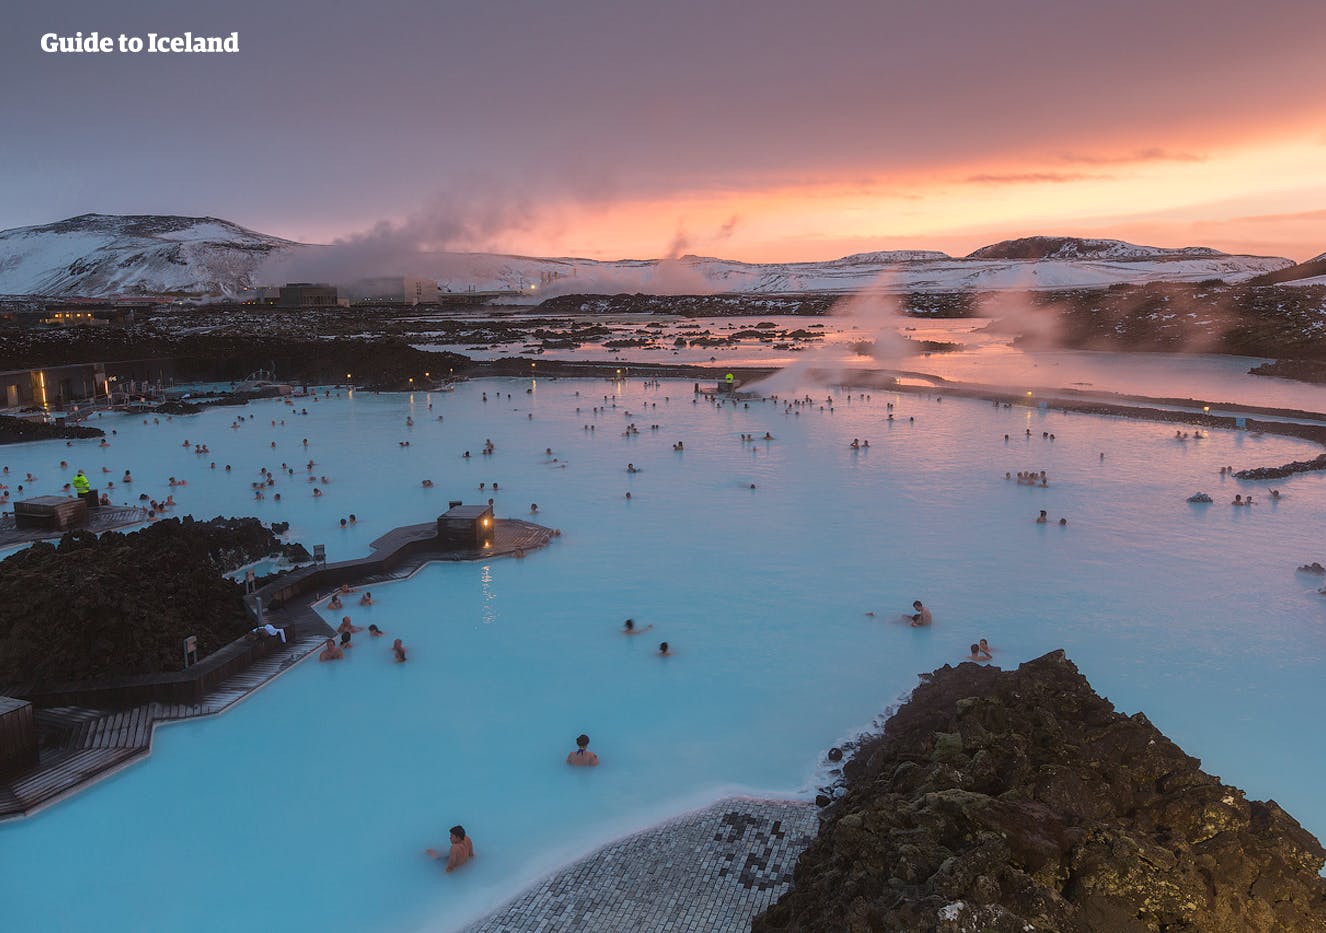 Nach deiner langen Reise kannst du in dem mineralreichen, geothermalen Wasser der Blauen Lagune neue Energie tanken